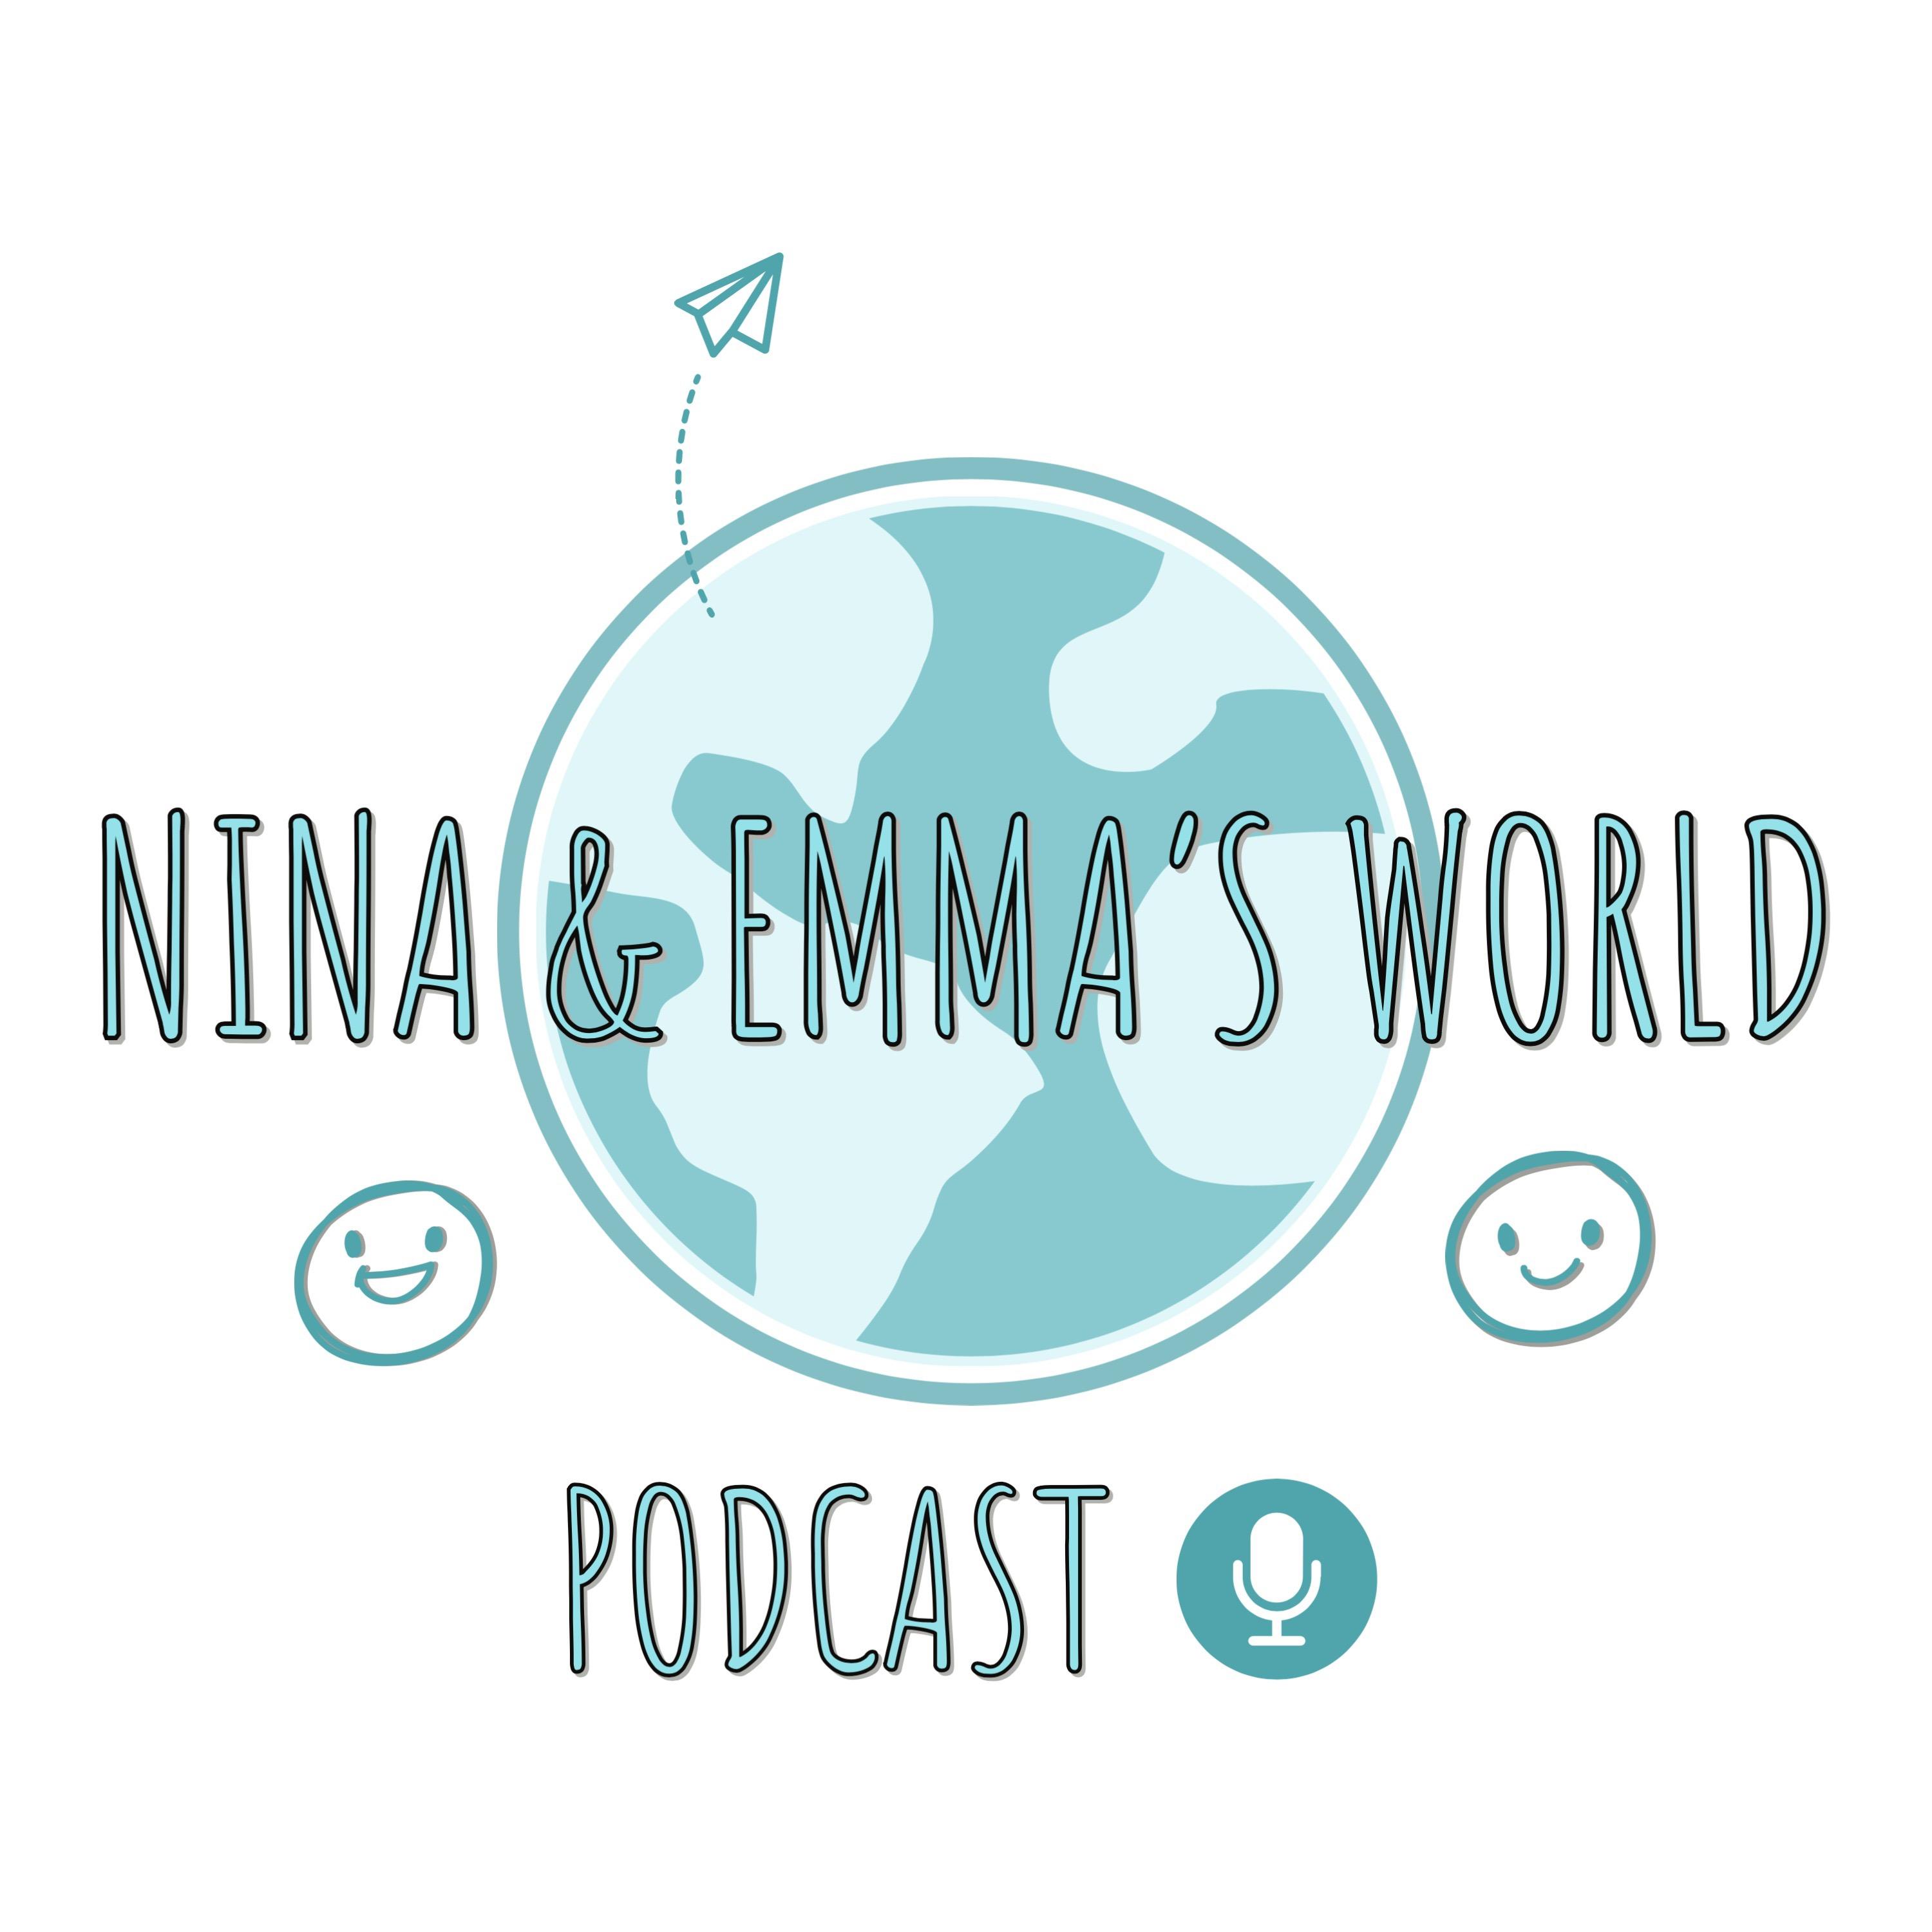 Nina and Emma's World Podcast